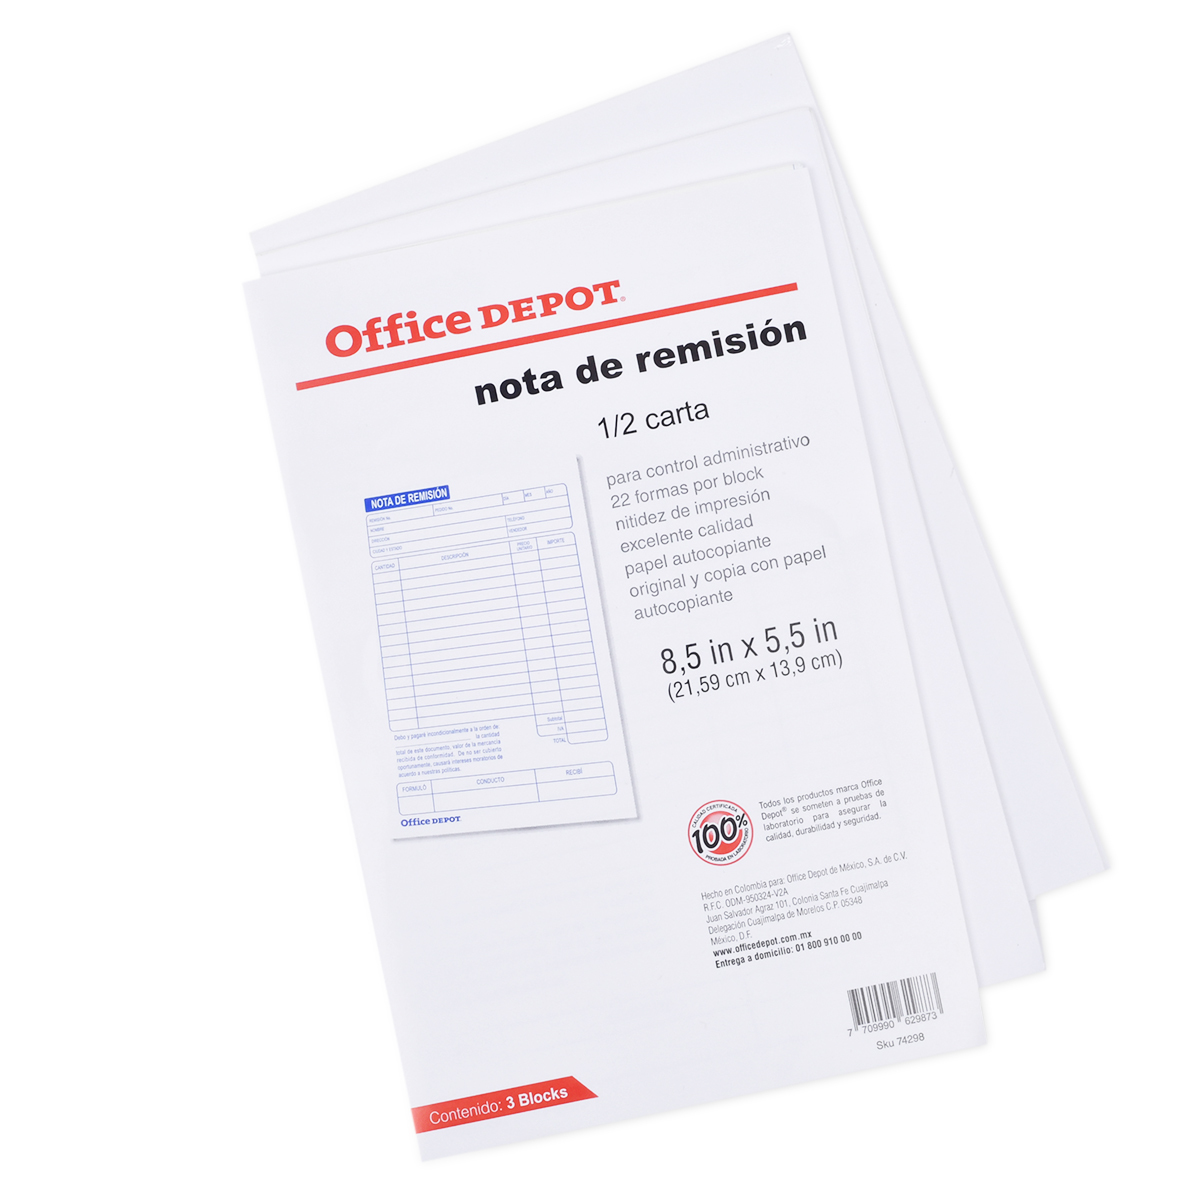 NOTA DE REMISION OFFICE DEPOT (1/2 CARTA, 3 PZS.)